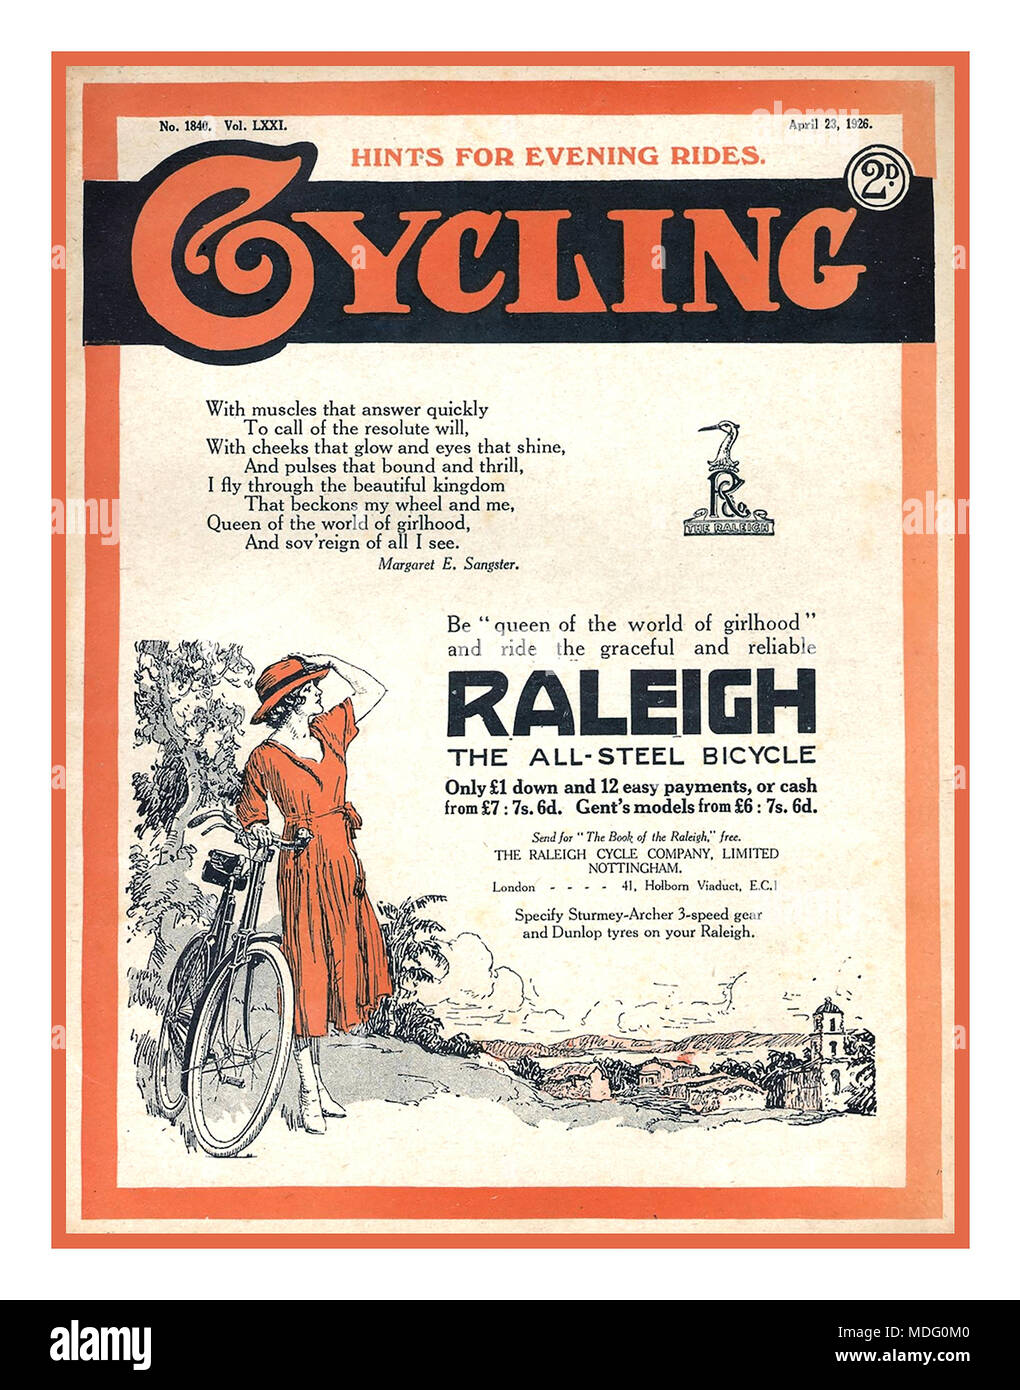 1900 Vintage Historischen Raleigh Fahrrad Werbung Plakat "Königin der Welt der Girlhood" - Raleigh Ad auf der Abdeckung des Radfahrens Magazin, 1926. Stockfoto